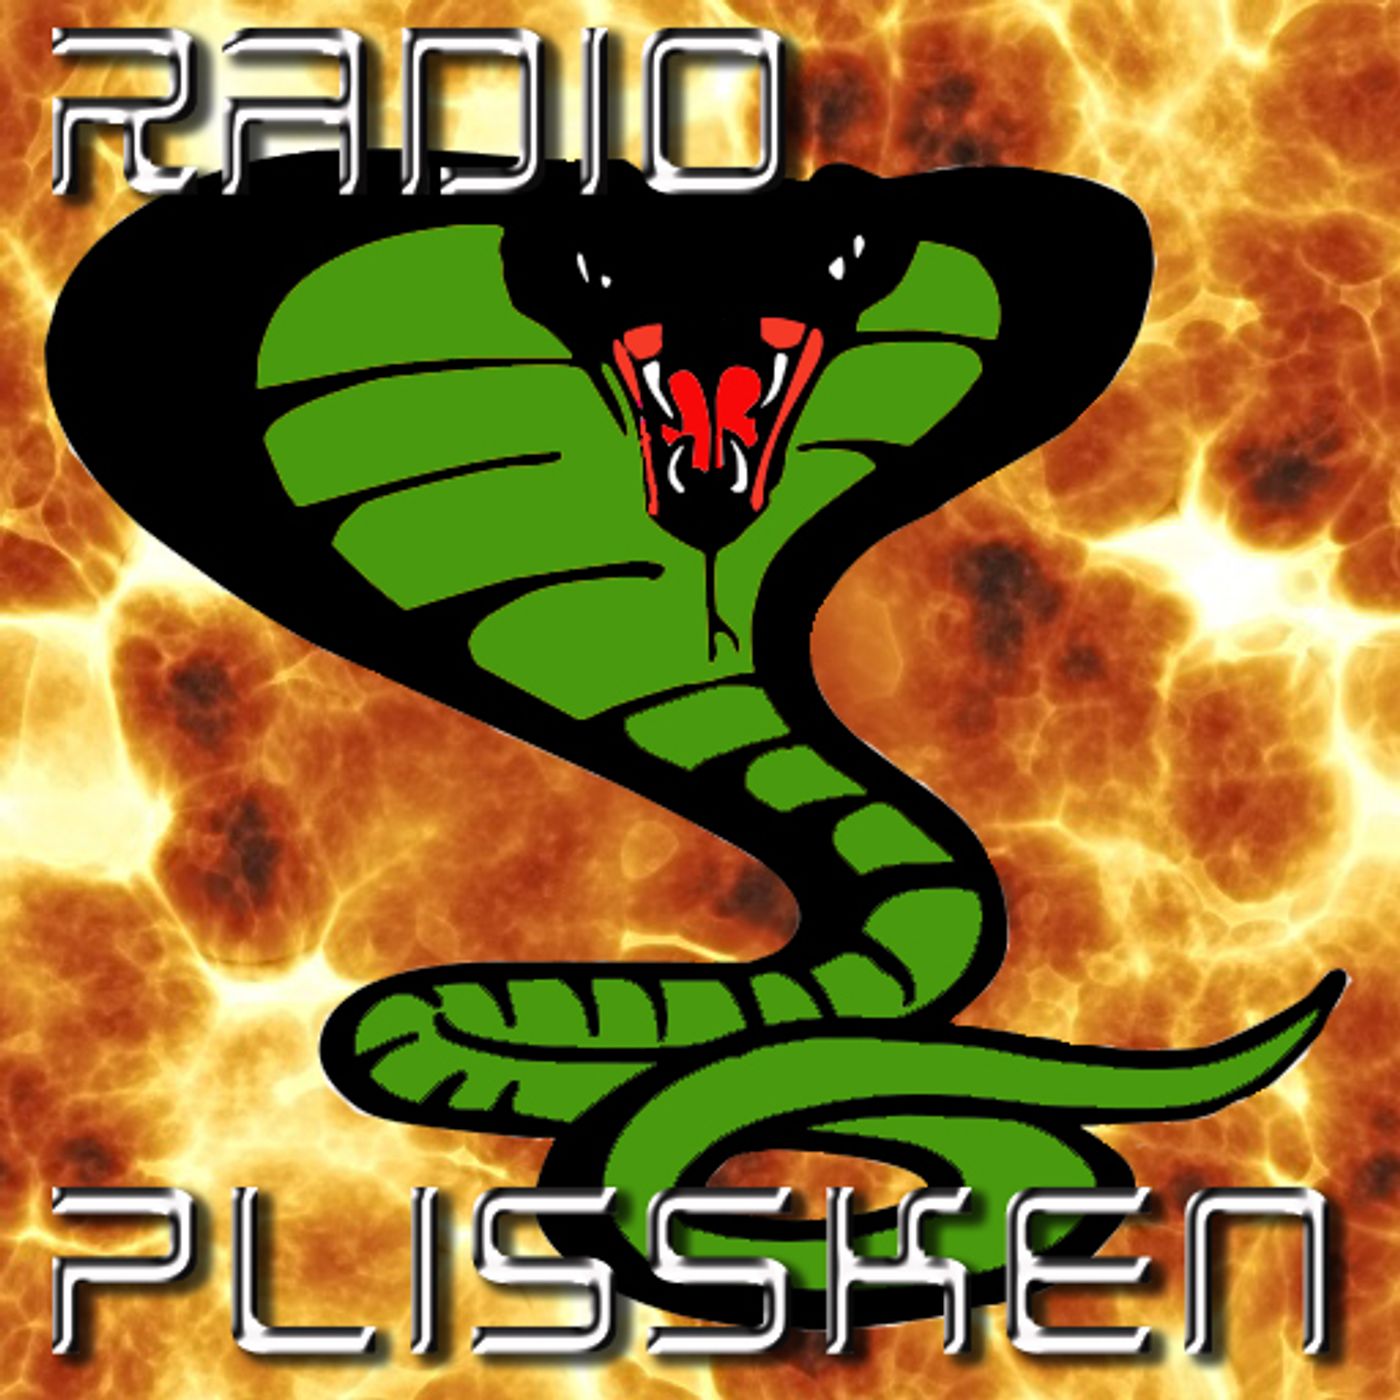 Radio Plissken